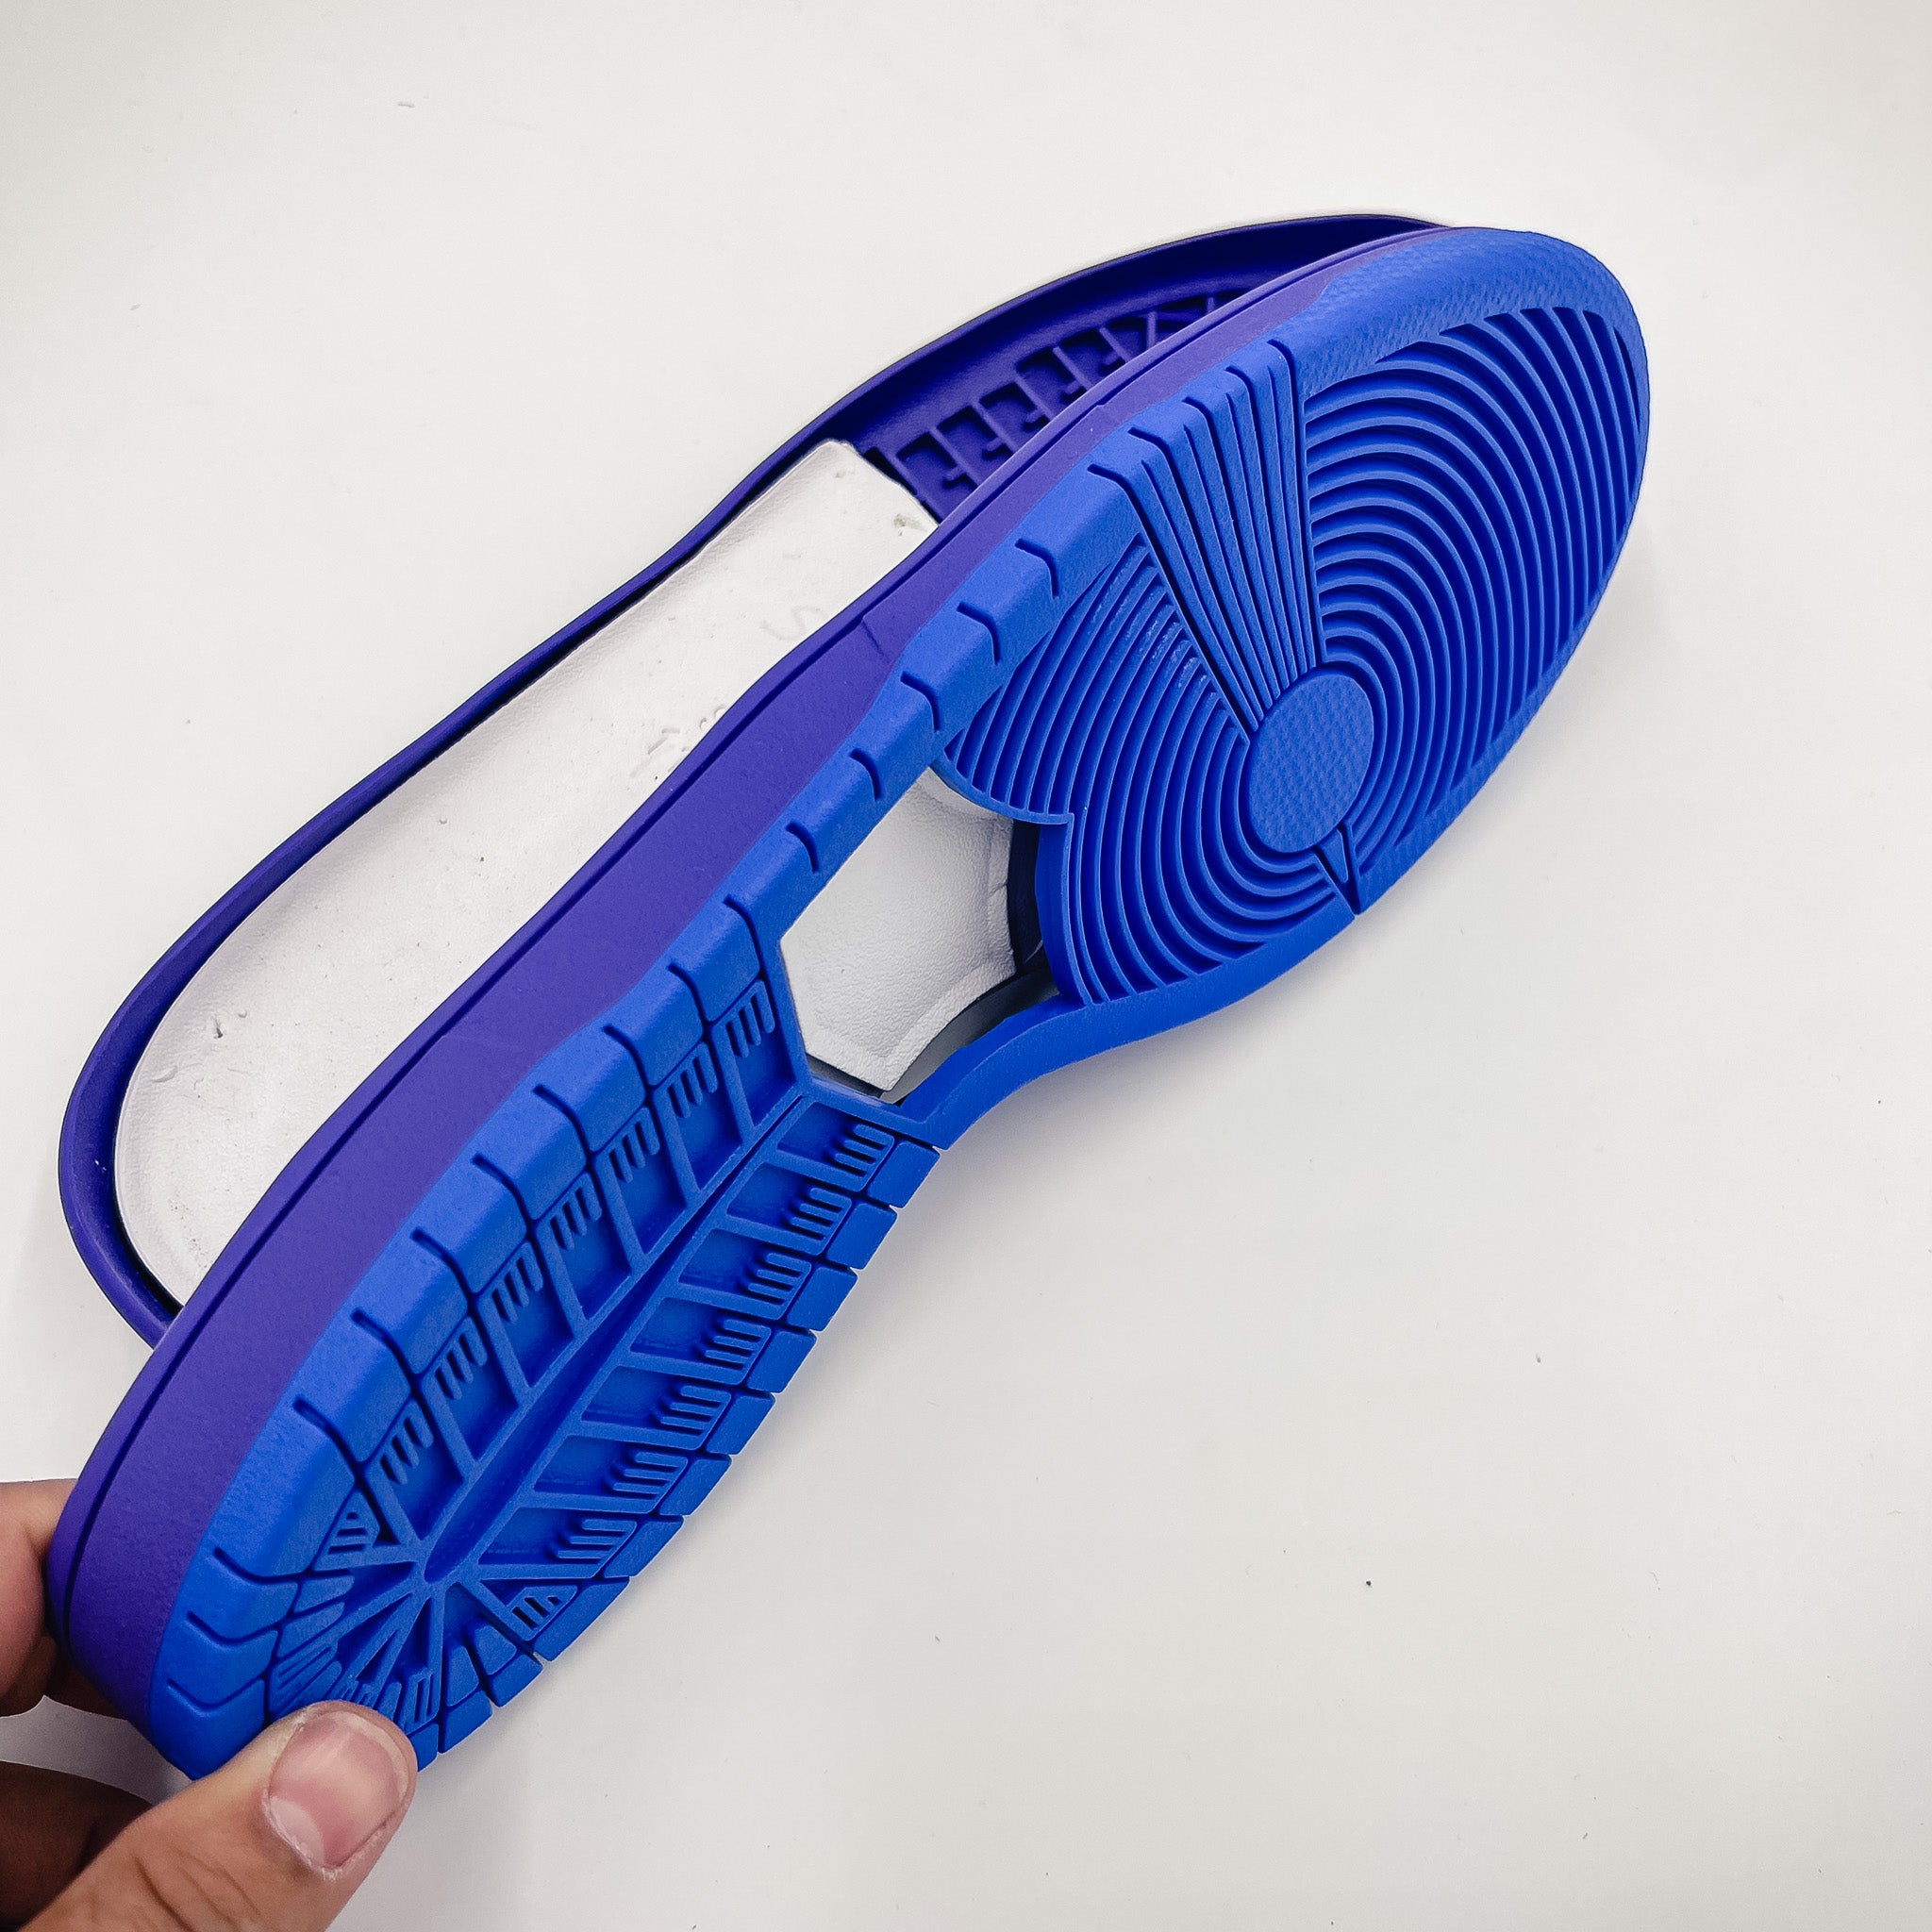 SkateBoard (SB Dunk) Shoe Soles, Purple/Blue